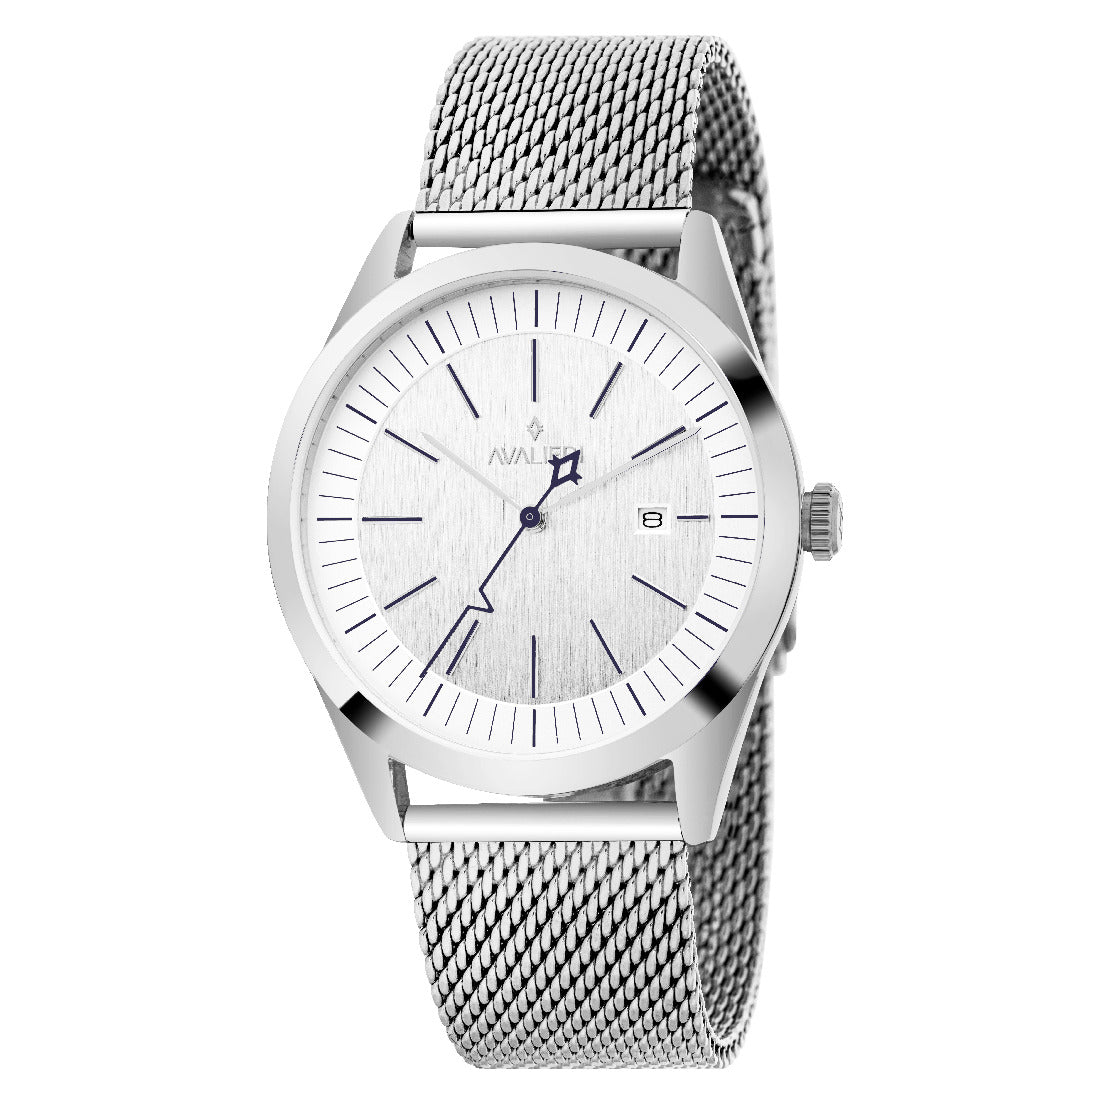 Avalieri Men's Quartz Watch, White Dial - AV-2533B